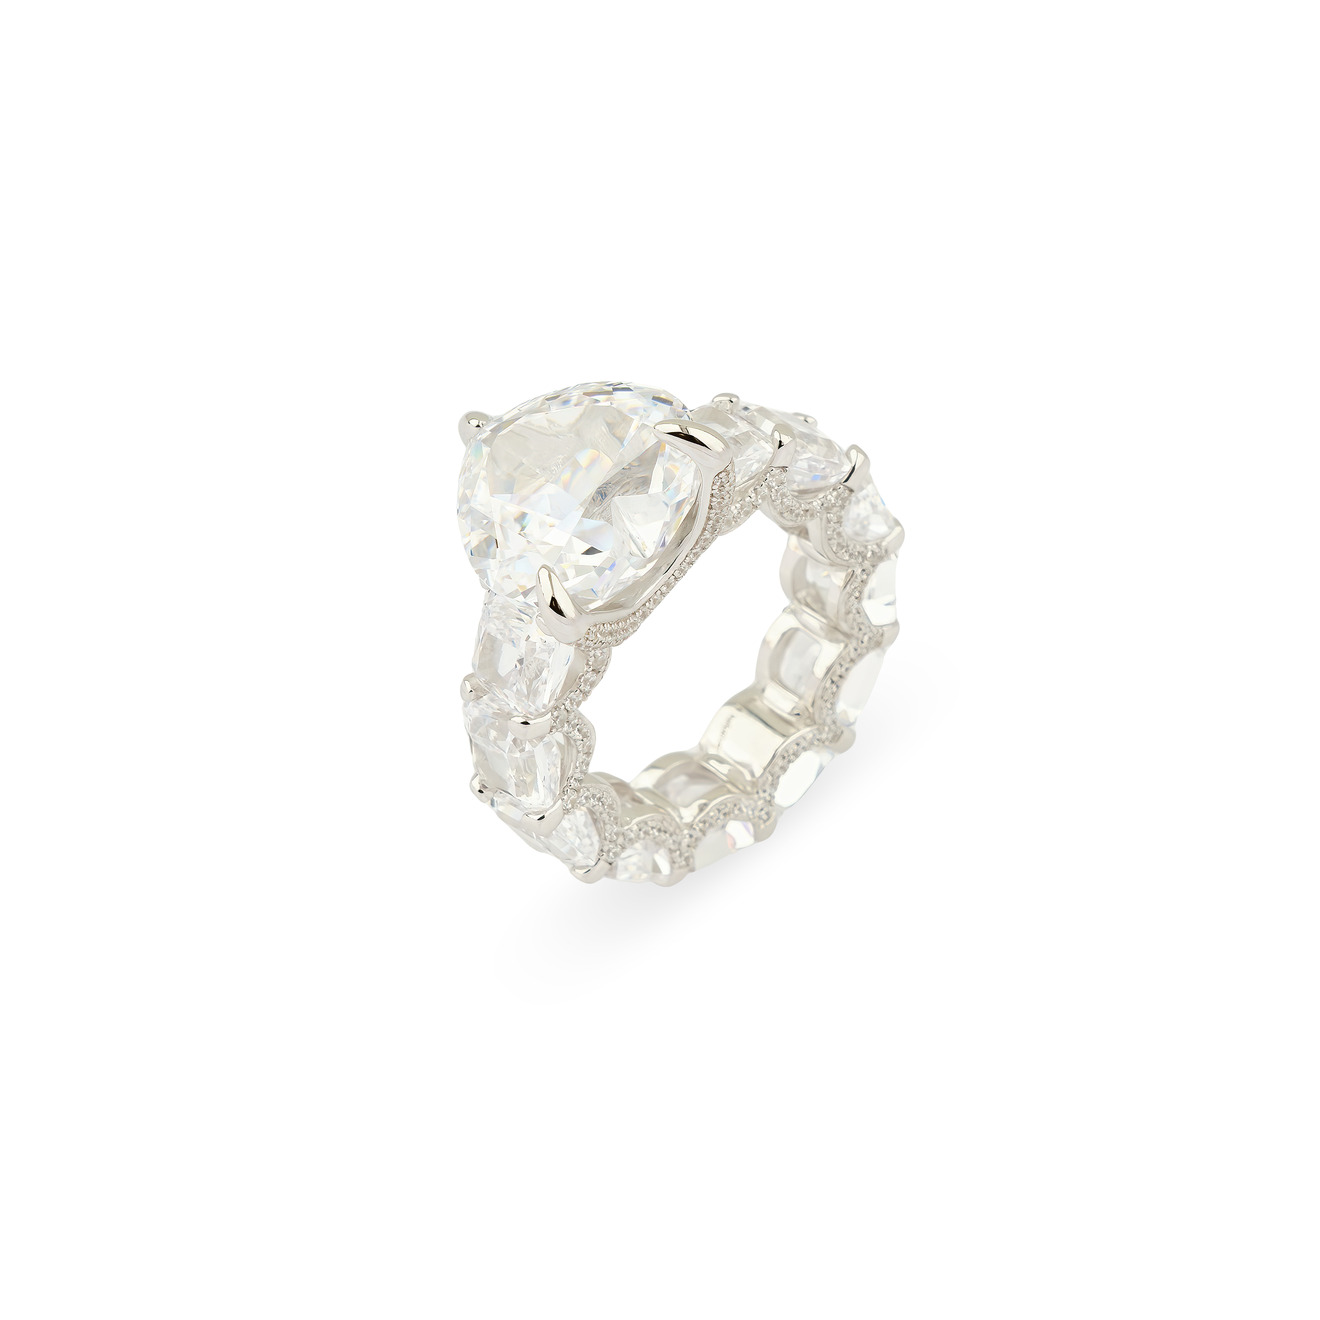 Holy Silver Кольцо из серебра с дорожкой из белых кристаллов и крупным белым кристаллом сердце